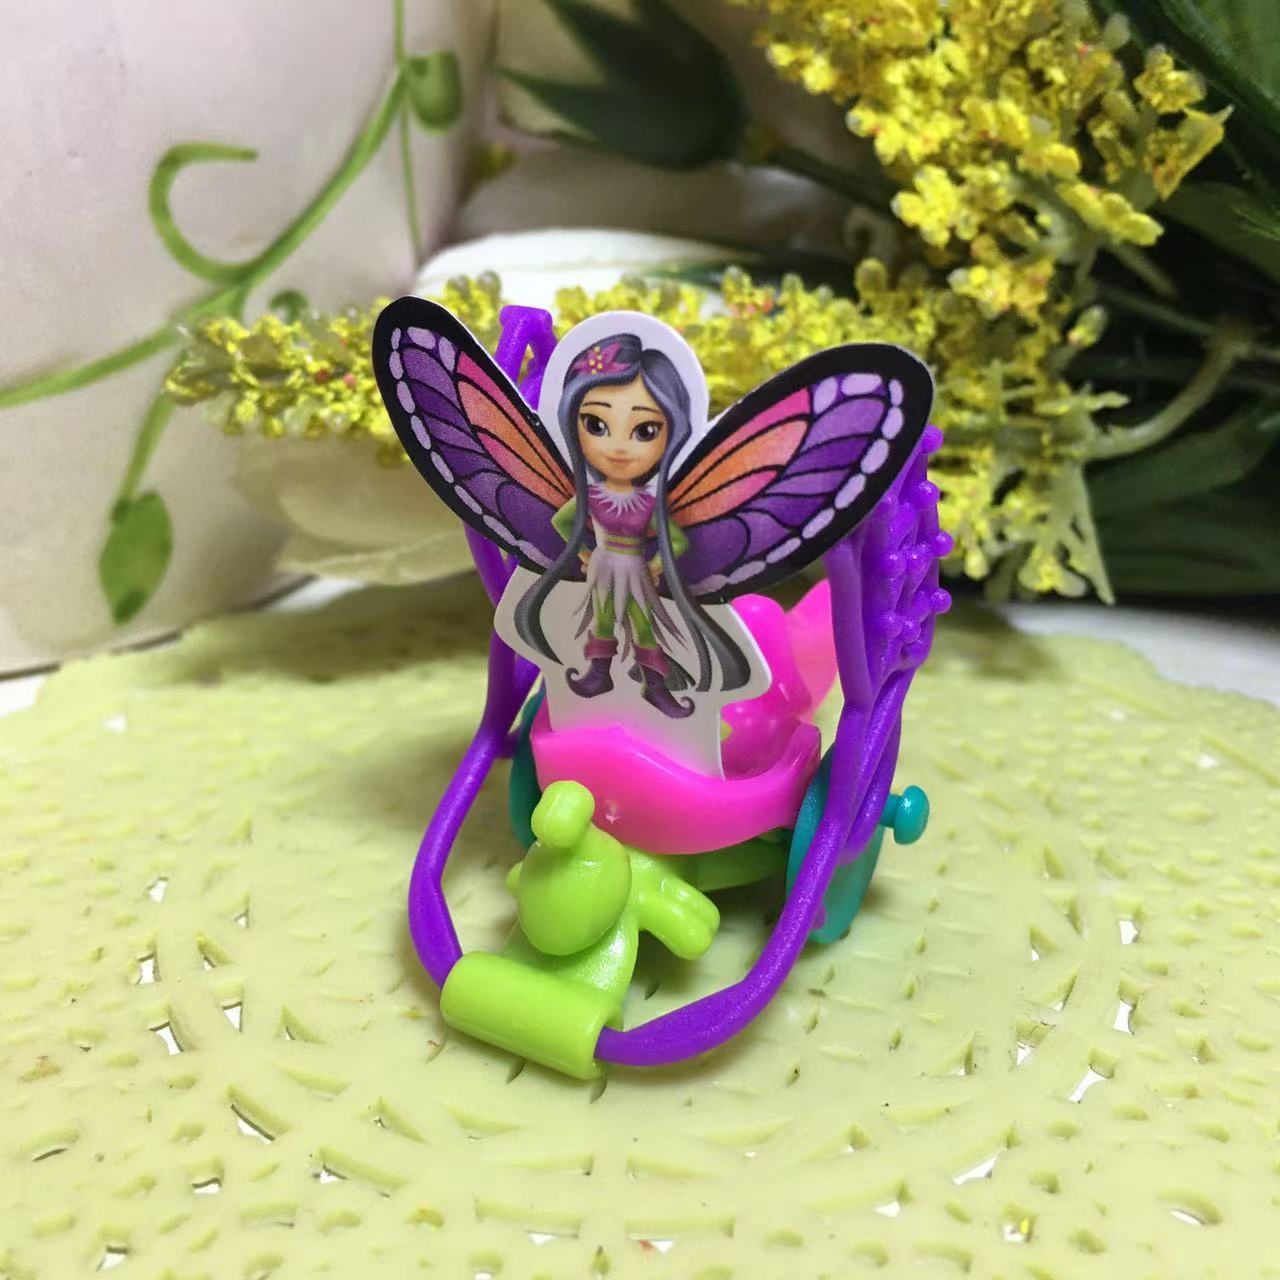 2023年健达奇趣蛋拆出的小玩具鲜花精灵乐园系列耳环蝴蝶水印相机